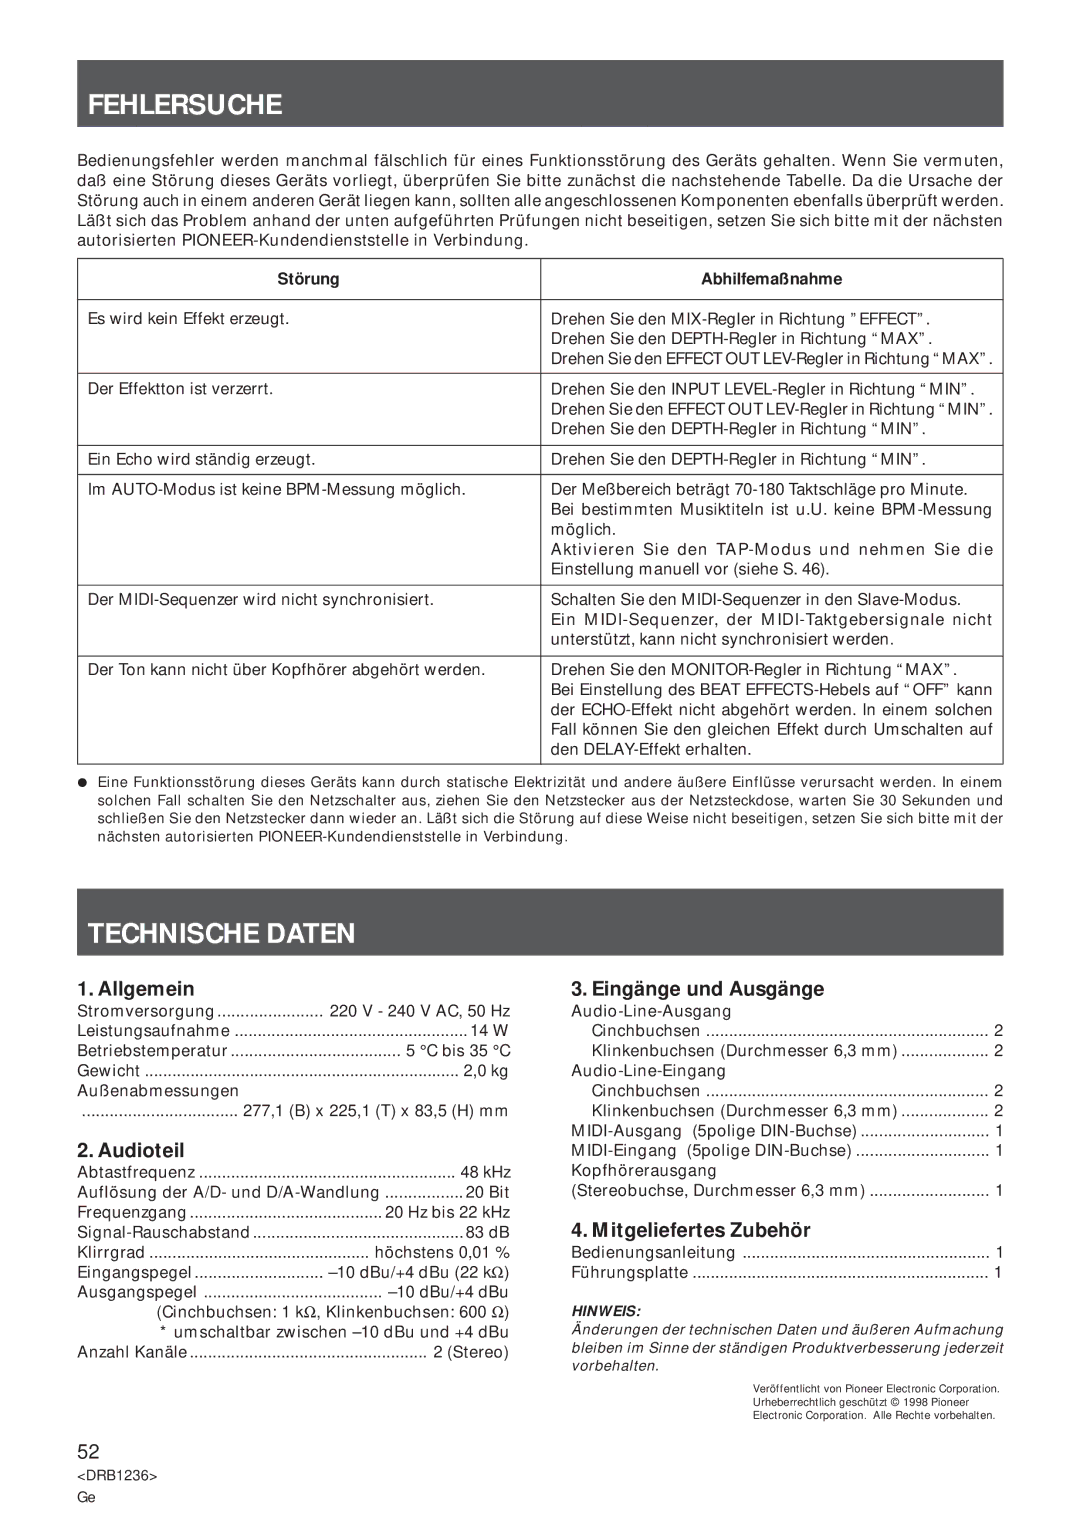 Pioneer Efx-500 operating instructions Fehlersuche, Technische Daten 